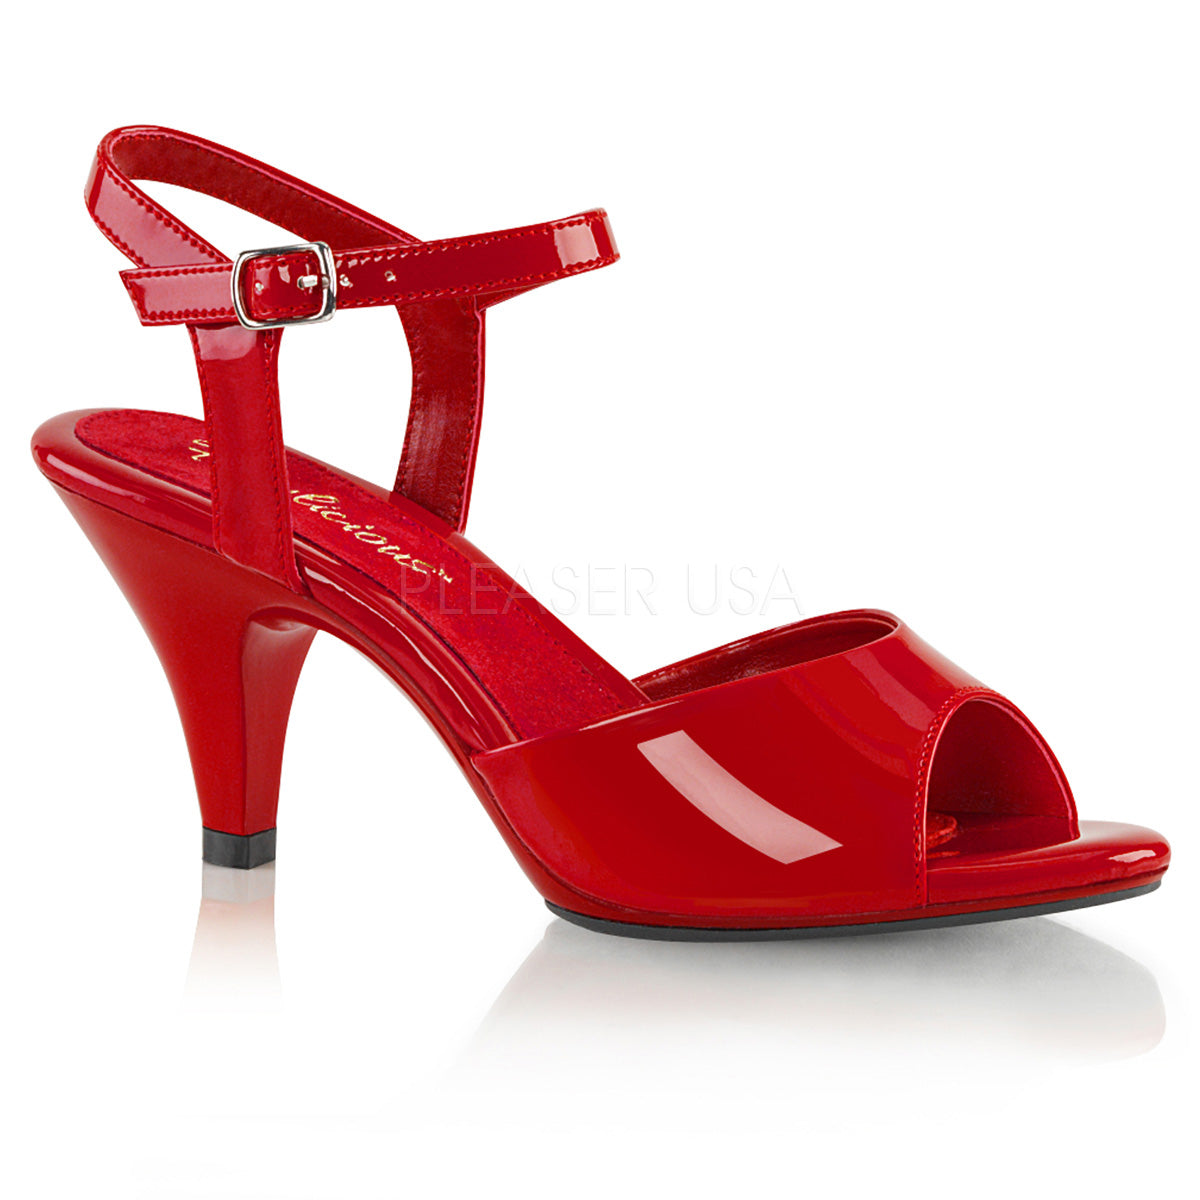 3" red heels